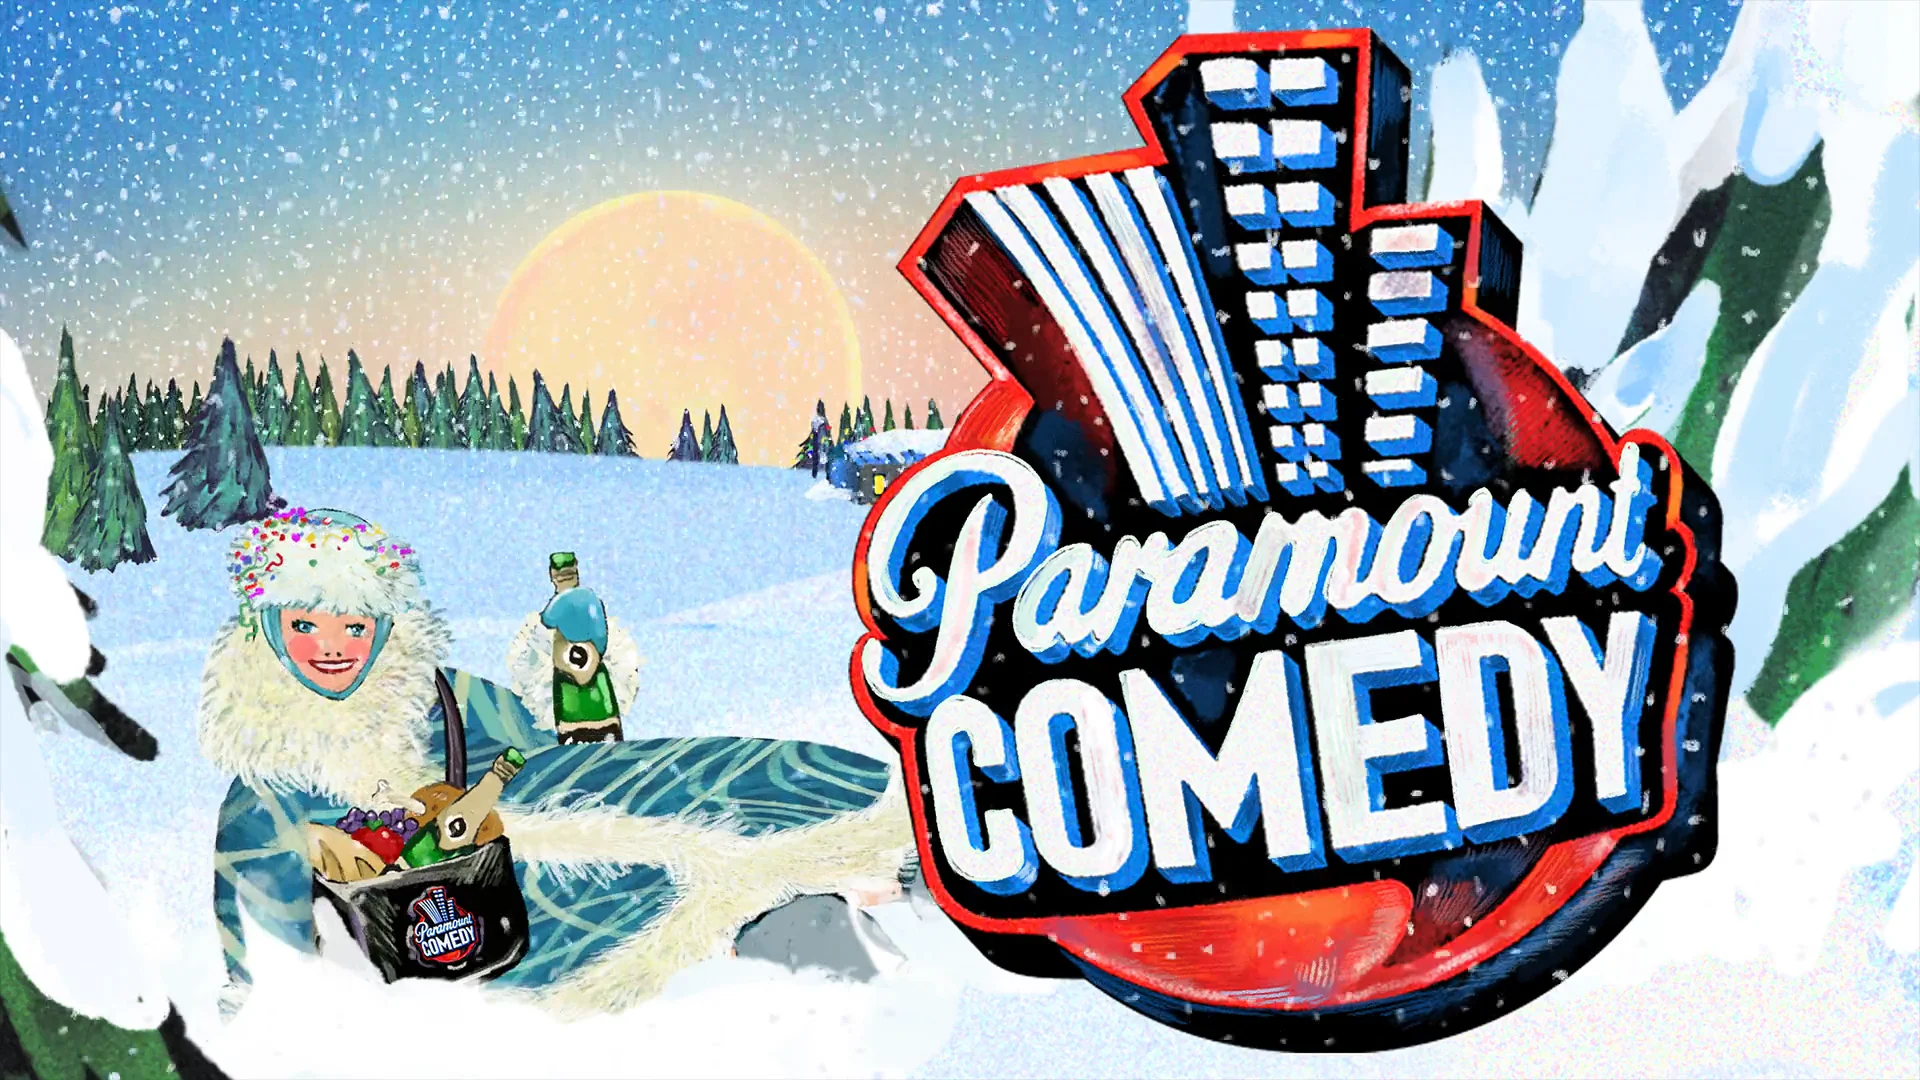 Парамаунт камеди большой. Телеканал Paramount comedy. Канал Парамаунт камеди. Заставка Парамаунт камеди. Paramount comedy логотип.